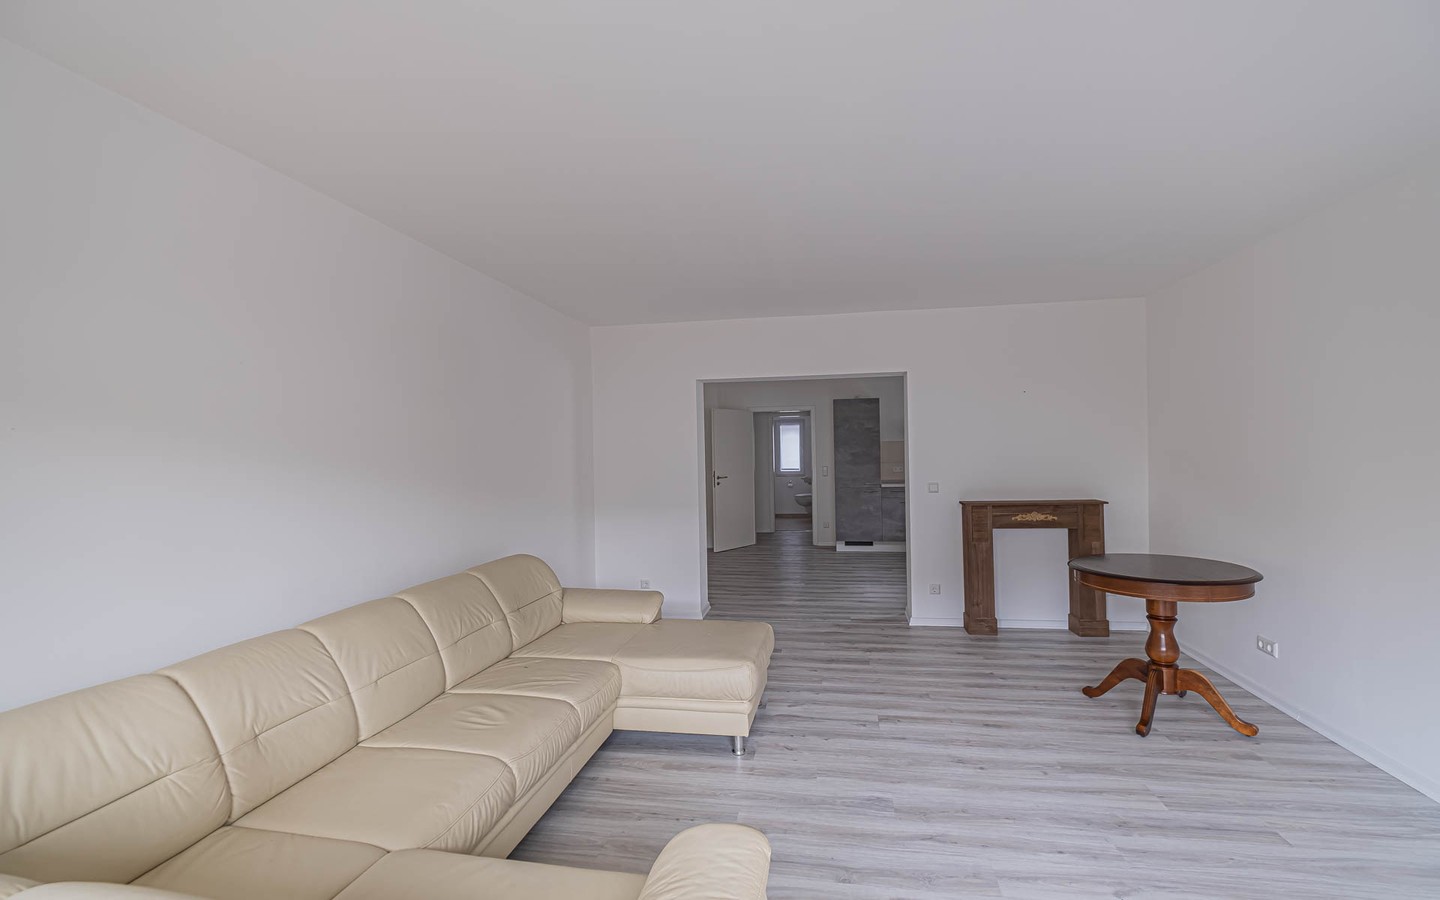 Wohnbereich - Frisch sanierte Dreizimmerwohnung mit Balkon und Garage in Eppelheim